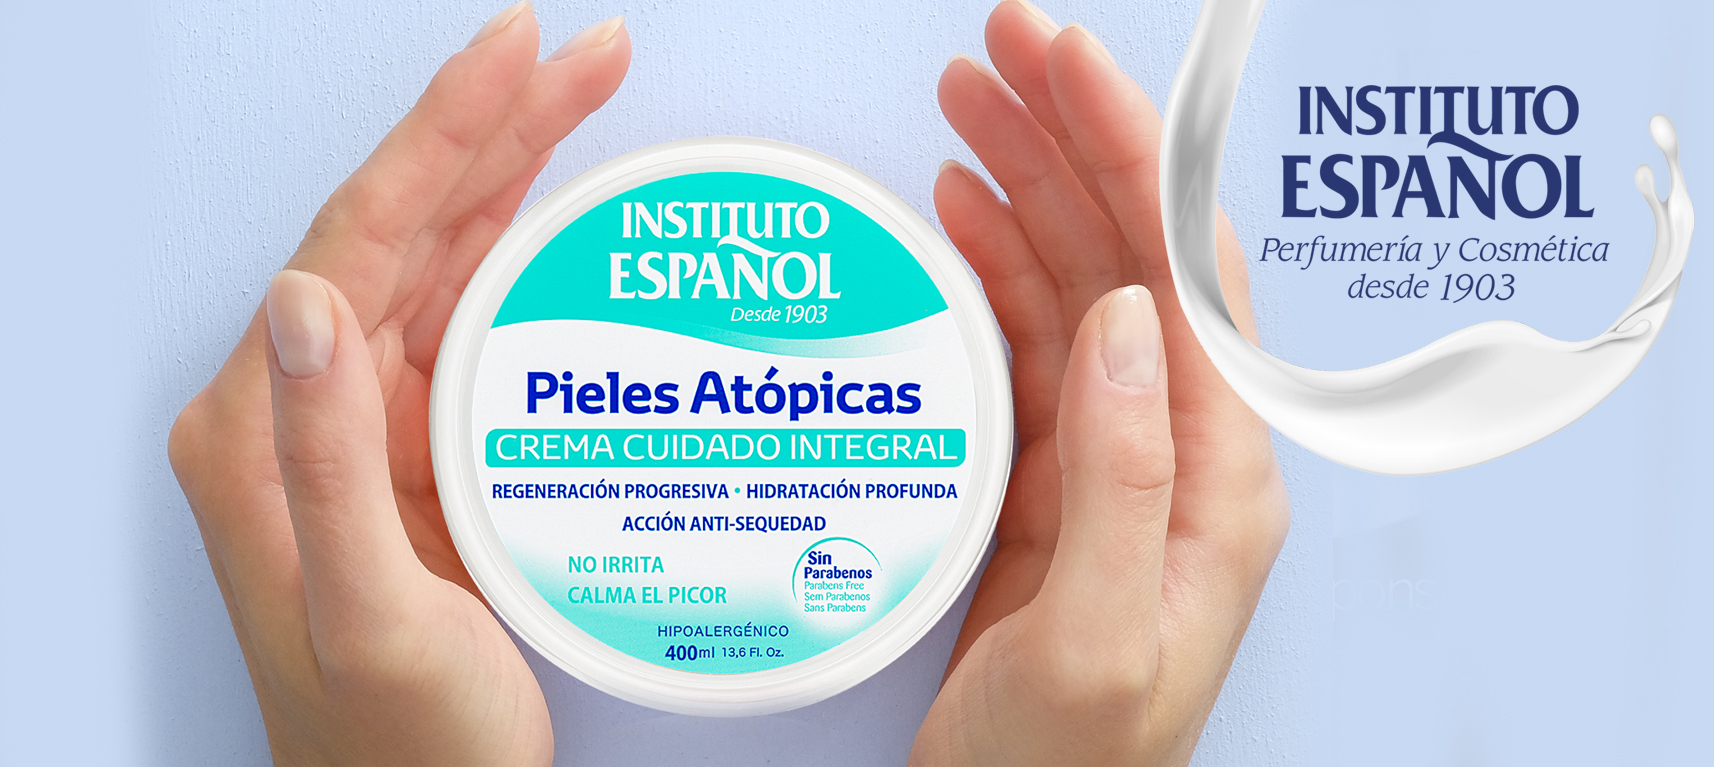 ¿Cómo el instituto español de pieles atópicas ayuda a los pacientes?